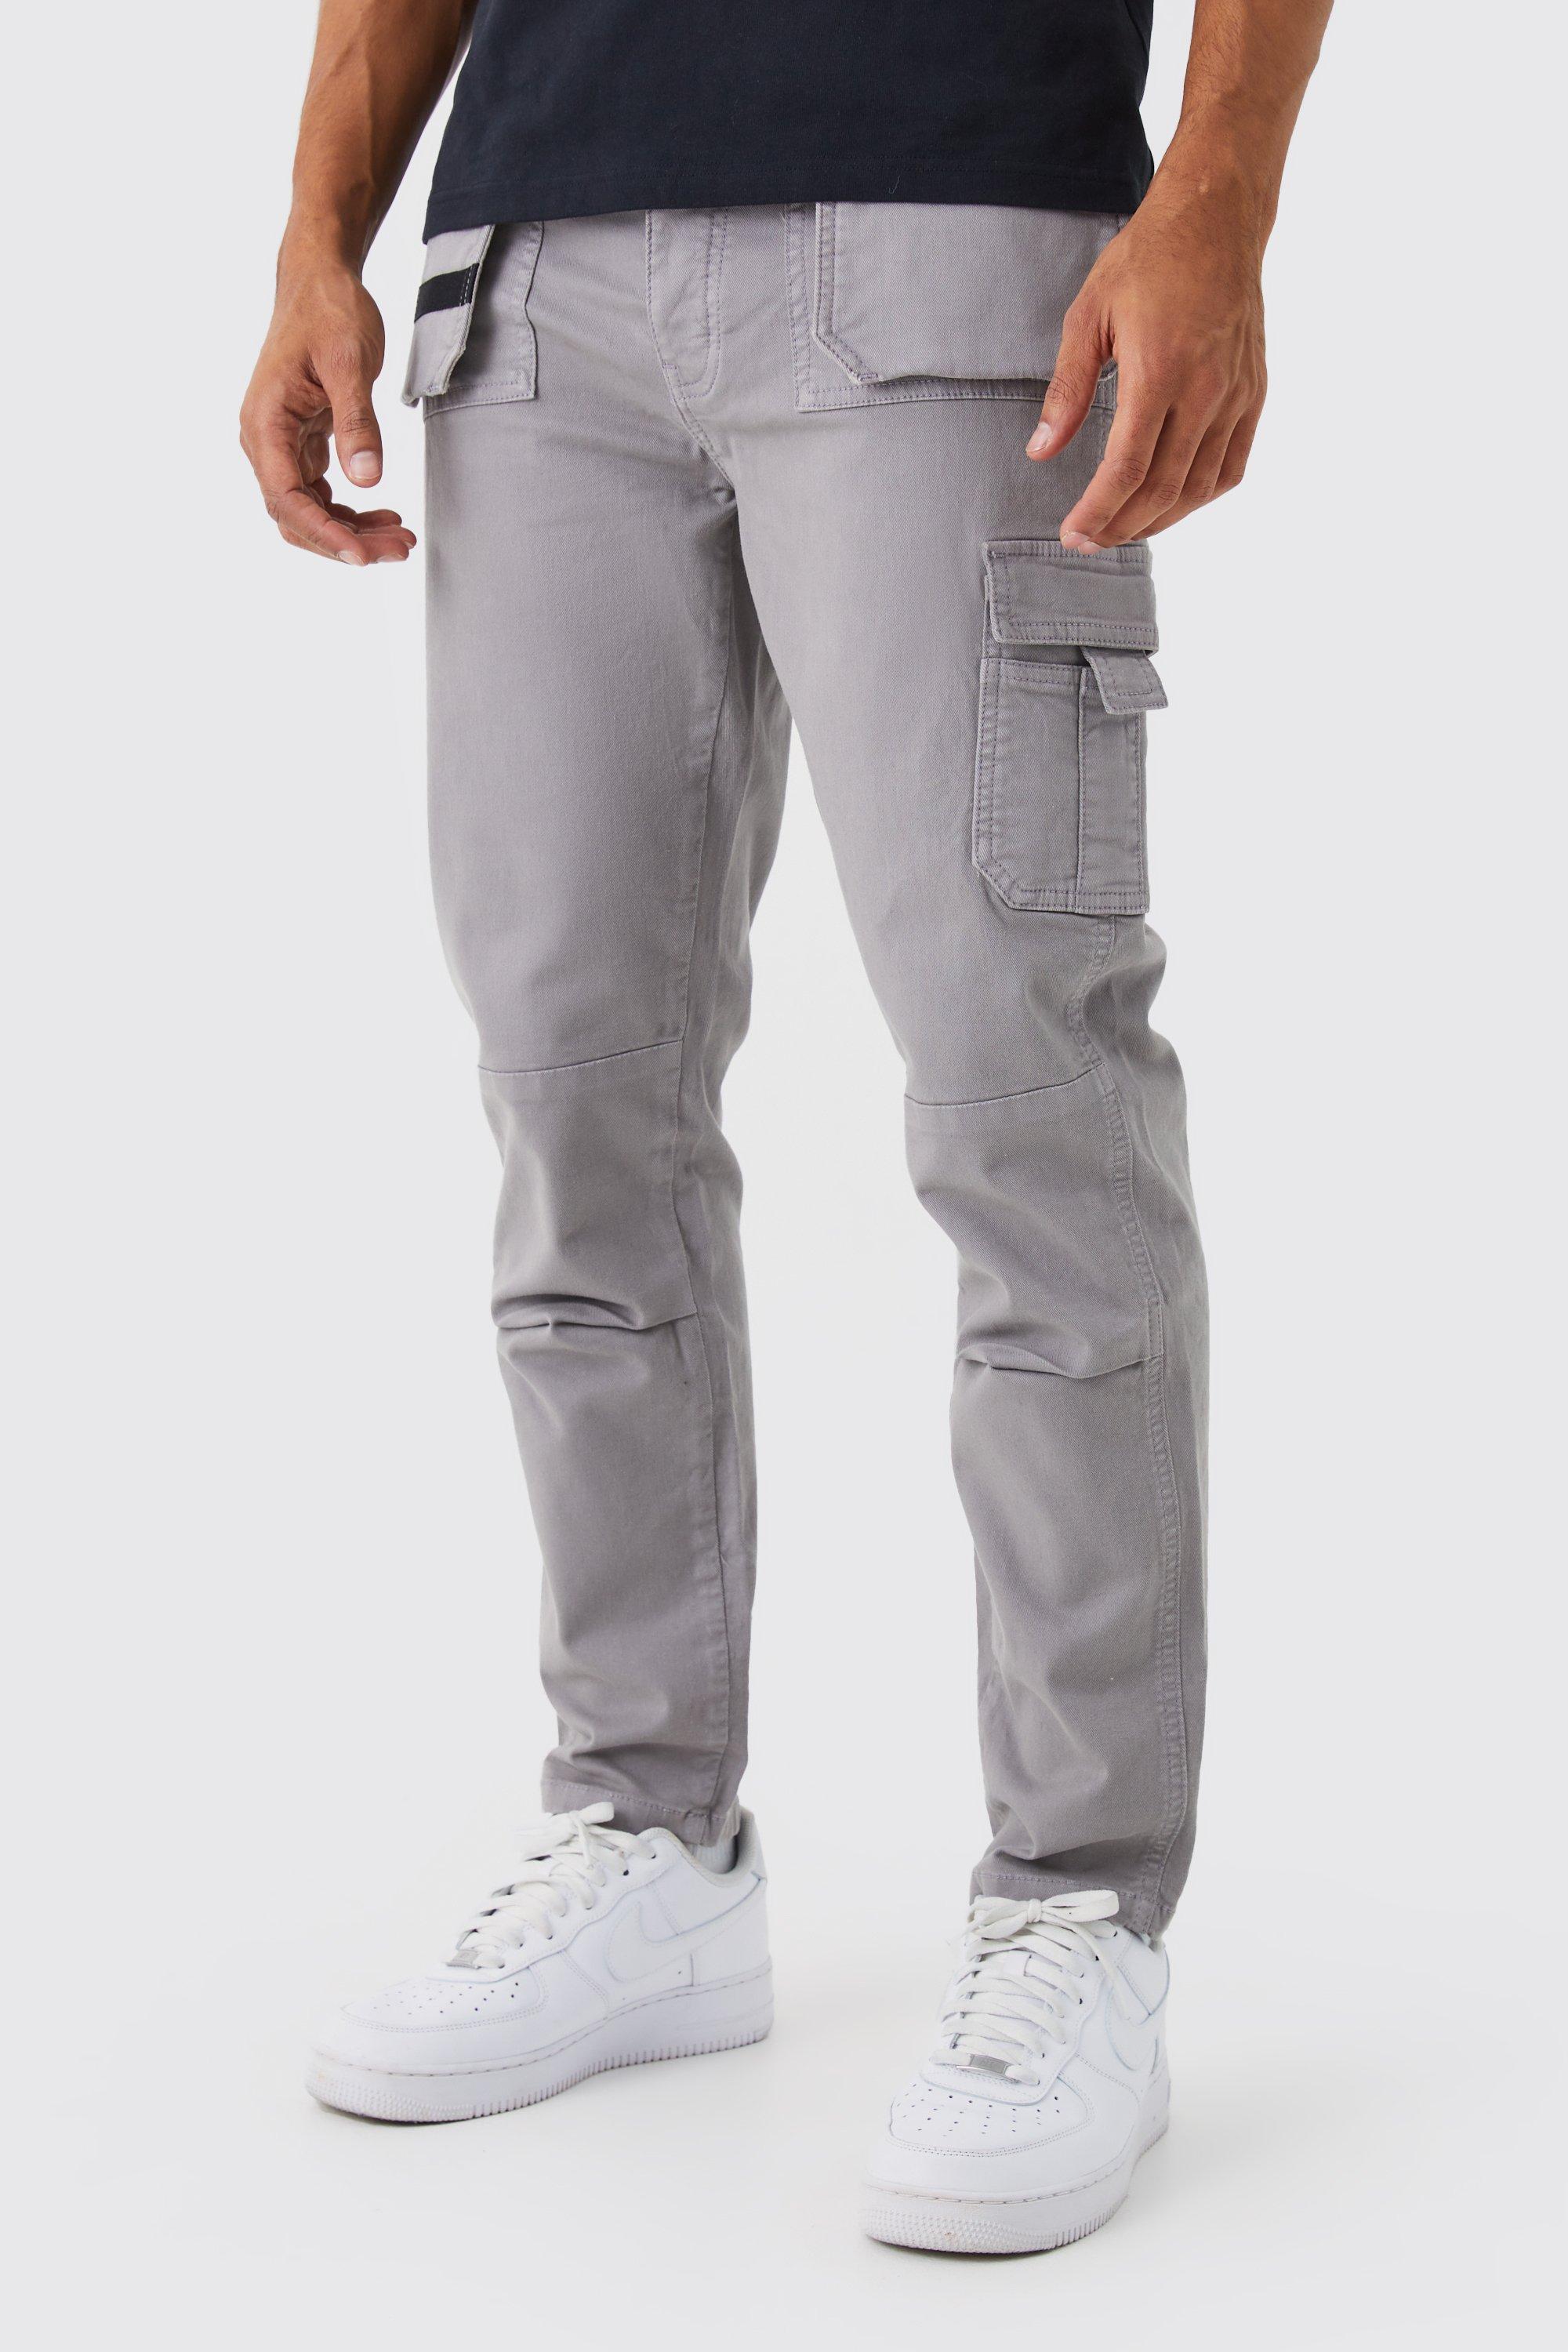 pantalon cargo slim homme - gris - 30, gris